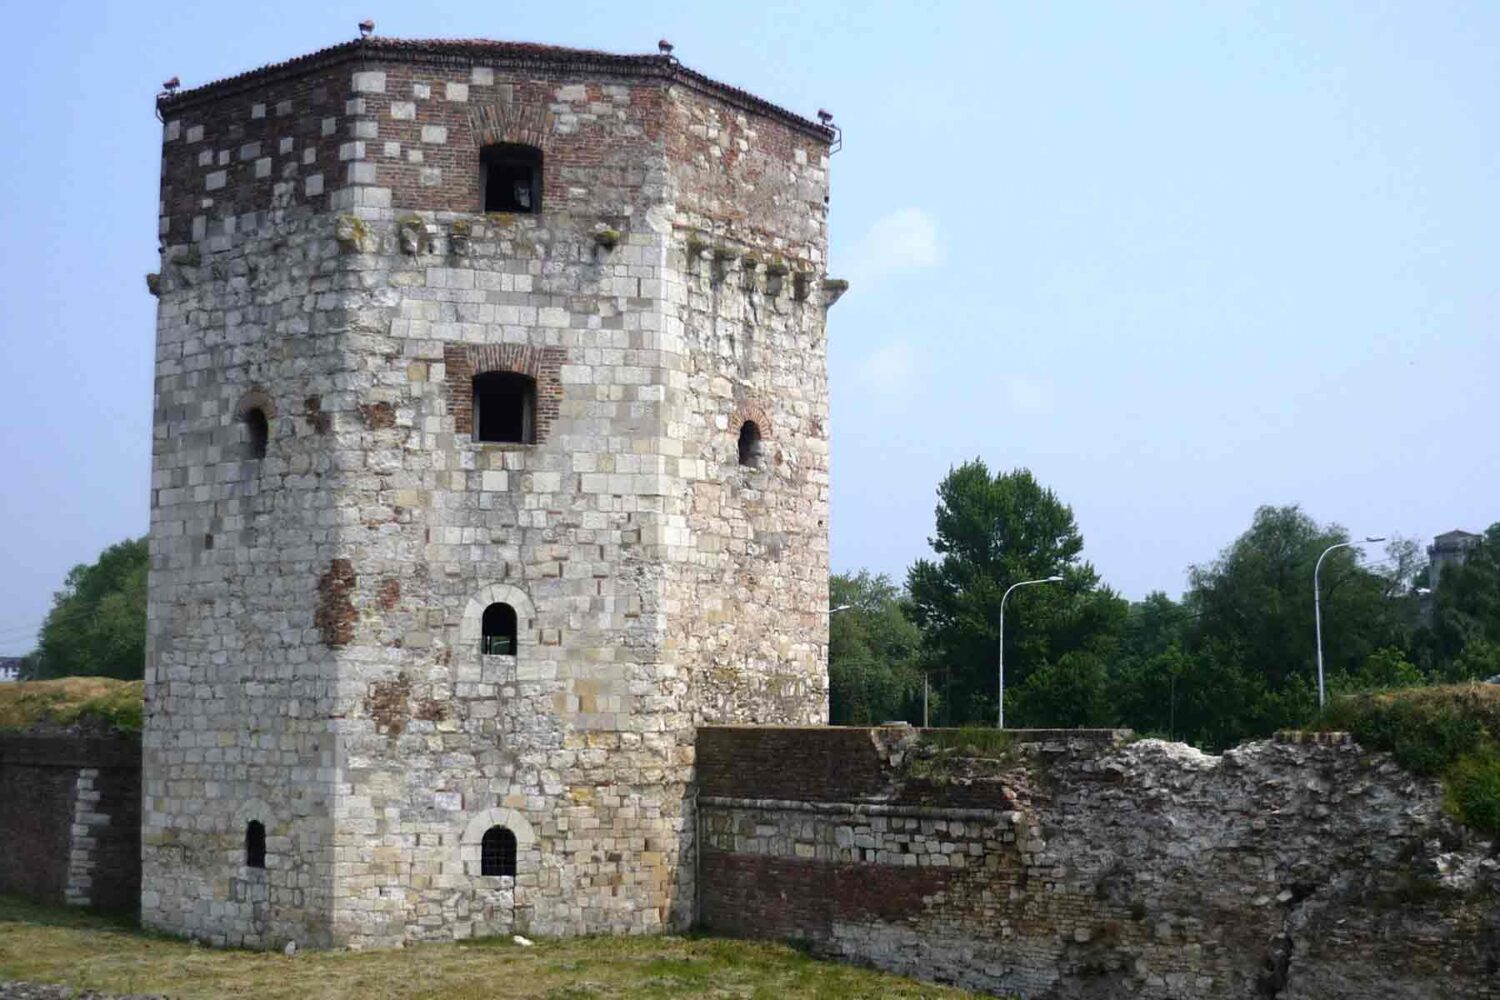 Obnovljena Kula Nebojša se nalazi skoro na obali Save